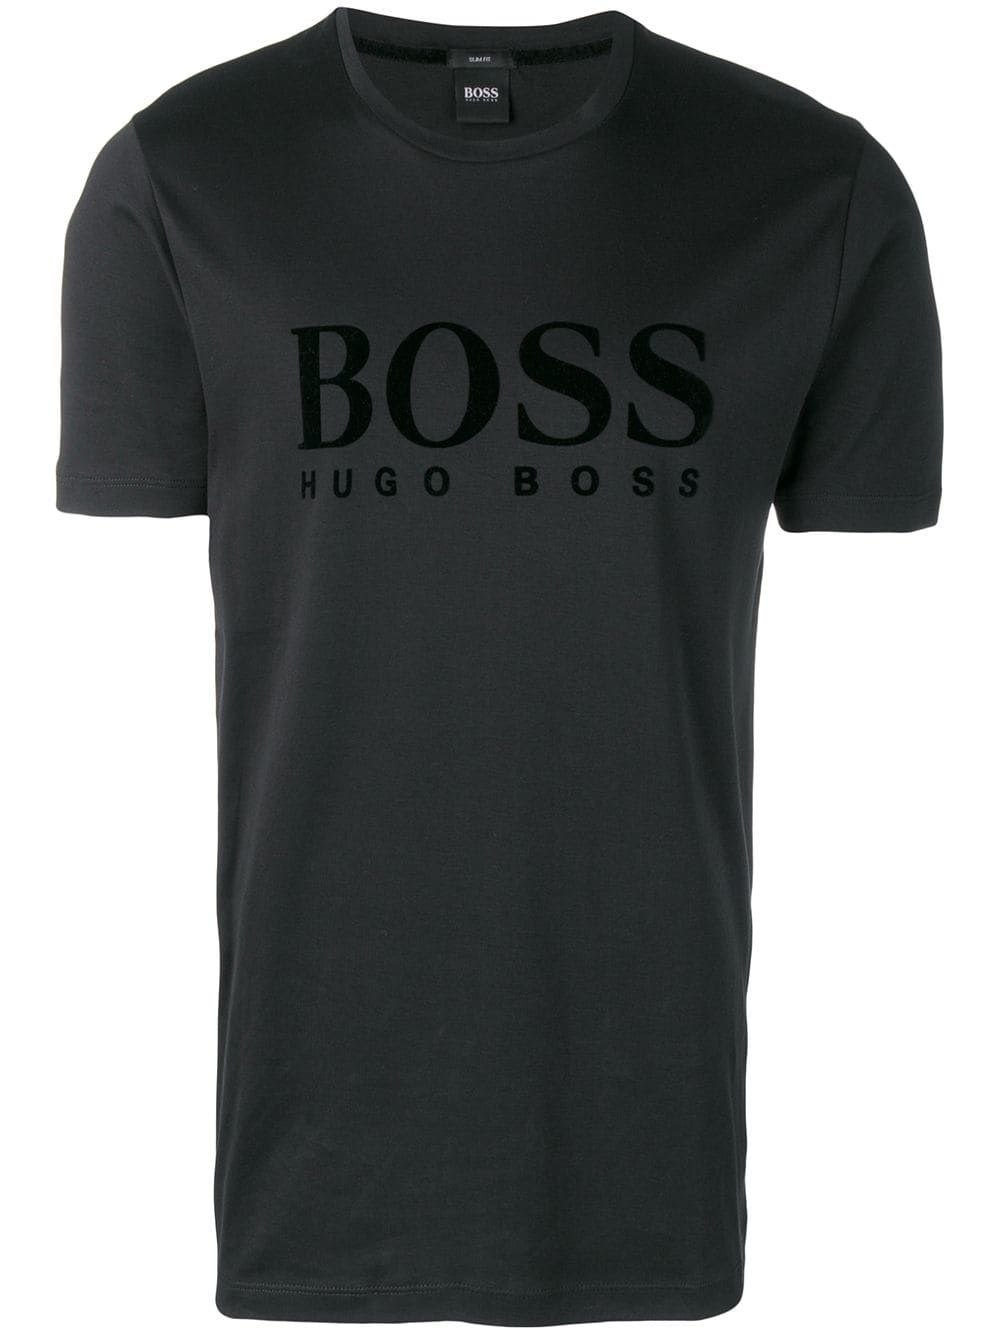 Футболки хуго босс. Футболка Хуго босс мужские. Hugo Boss майка. Босс Хуго босс футболка. Футболка Хьюго босс мужская.